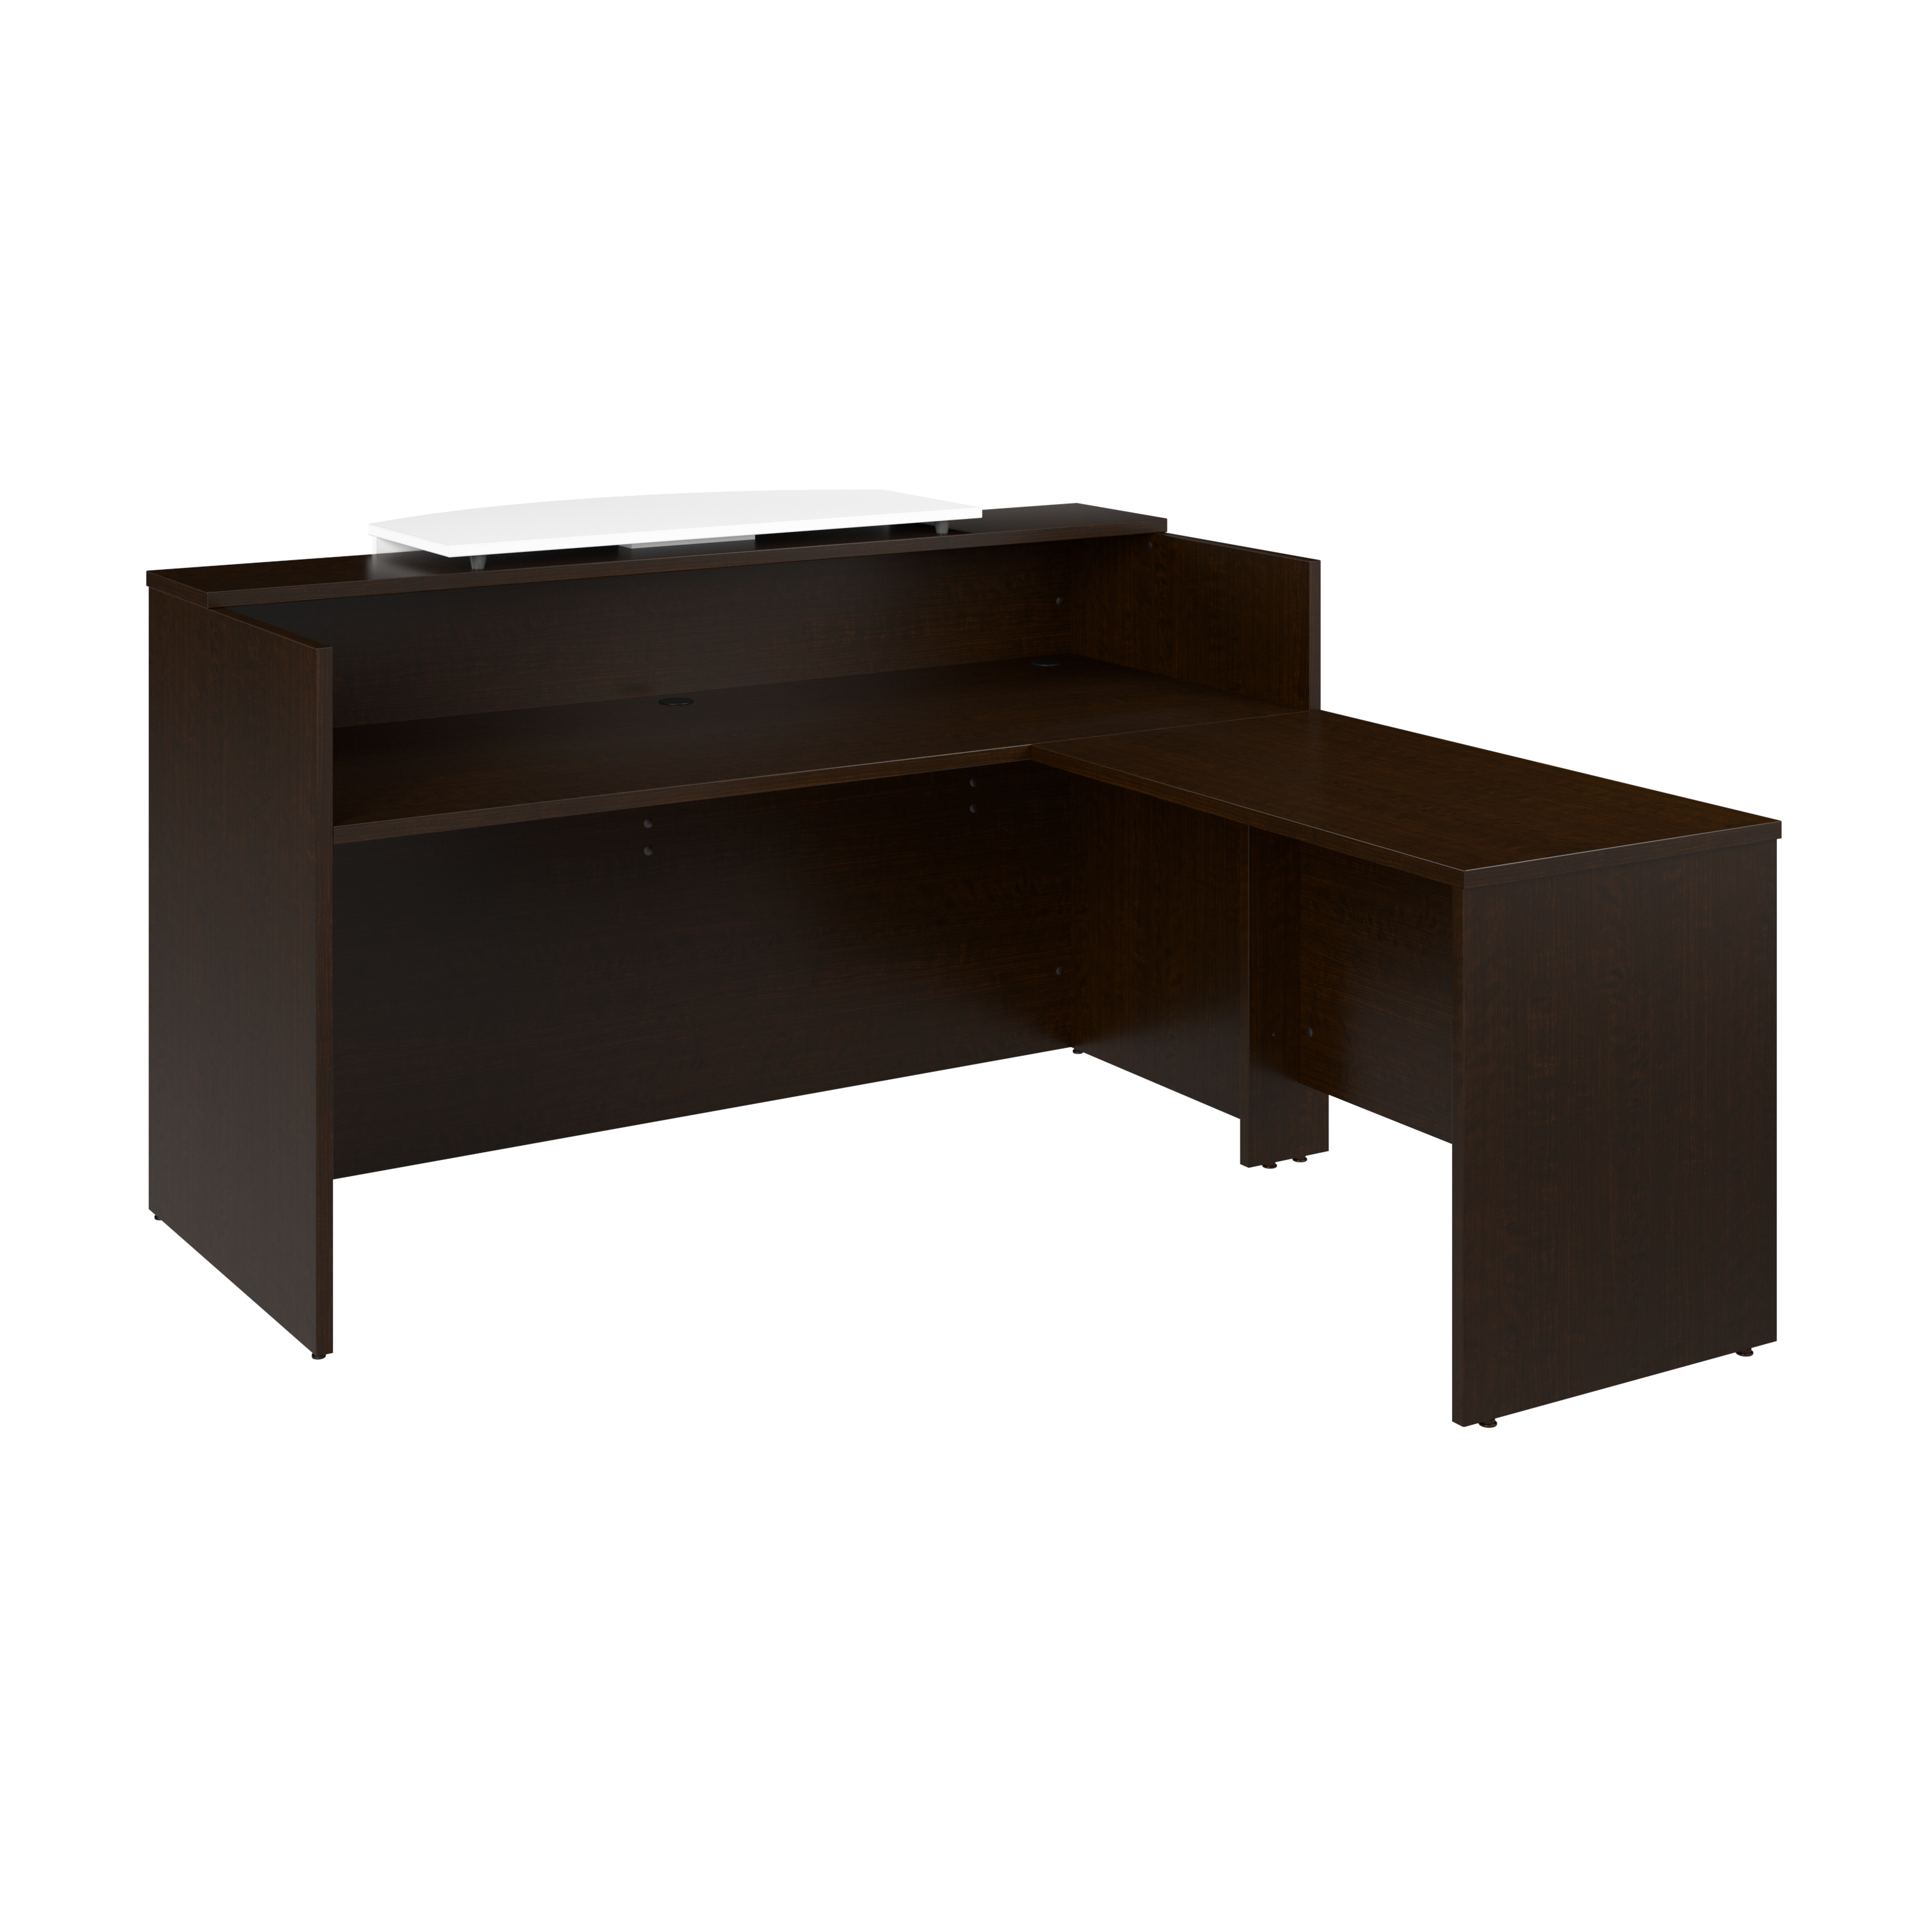 Shop Bush Business Furniture Arrive 72W x 72D L Shaped Reception Desk with Counter 02 ARV009MR #color_mocha cherry